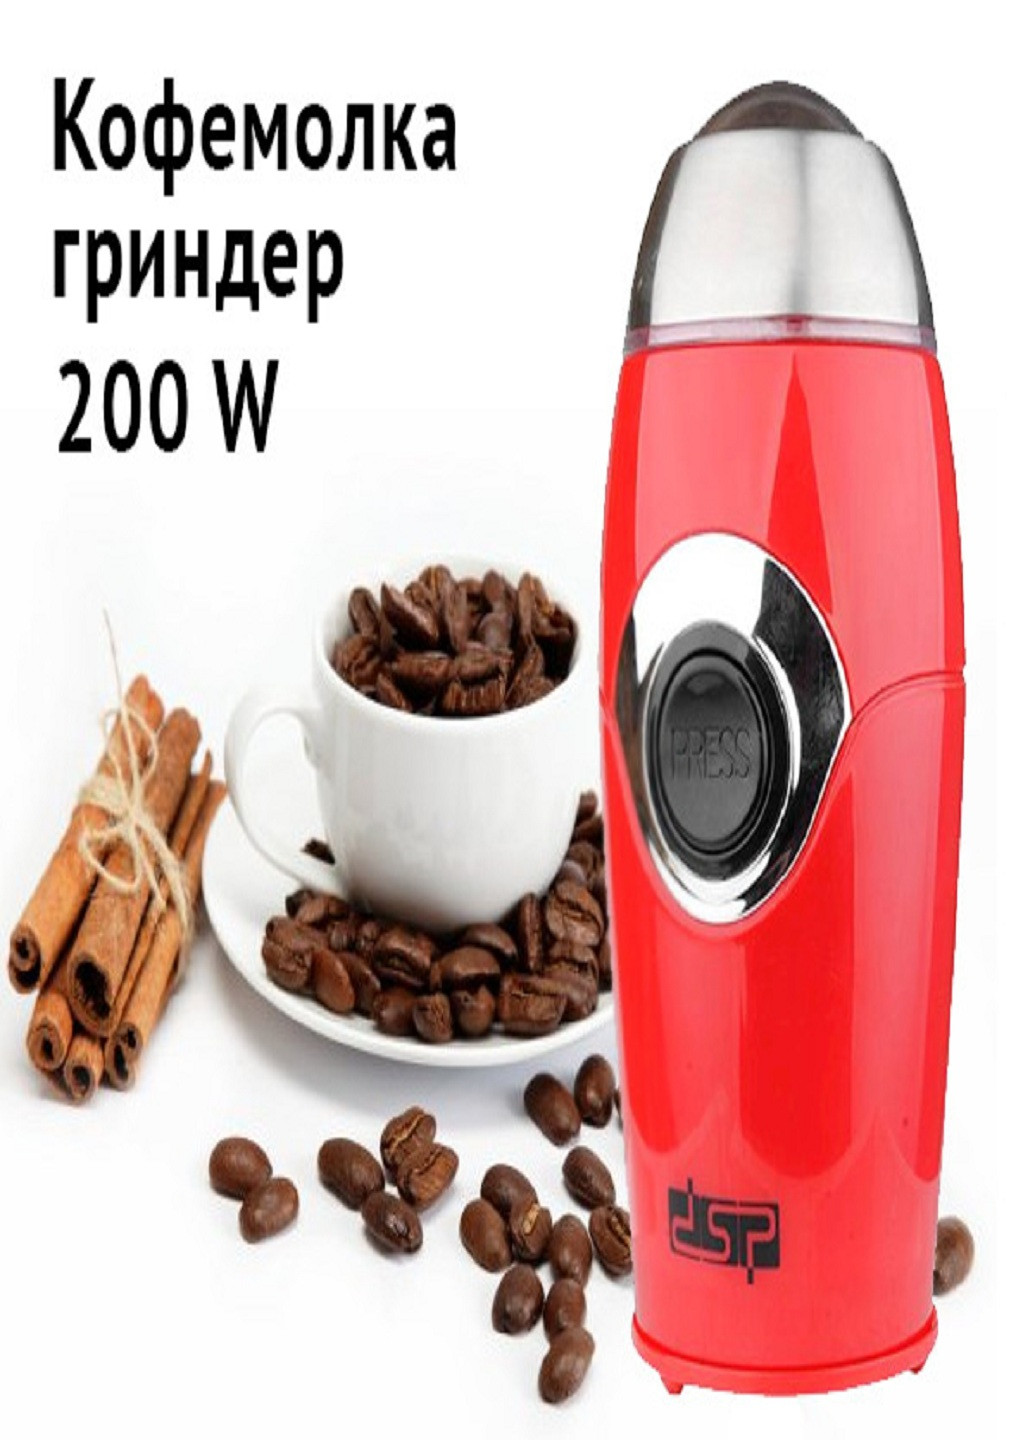 Электрическая кофемолка KA-3002 200 Вт Измельчитель кофе DSP (253932368)